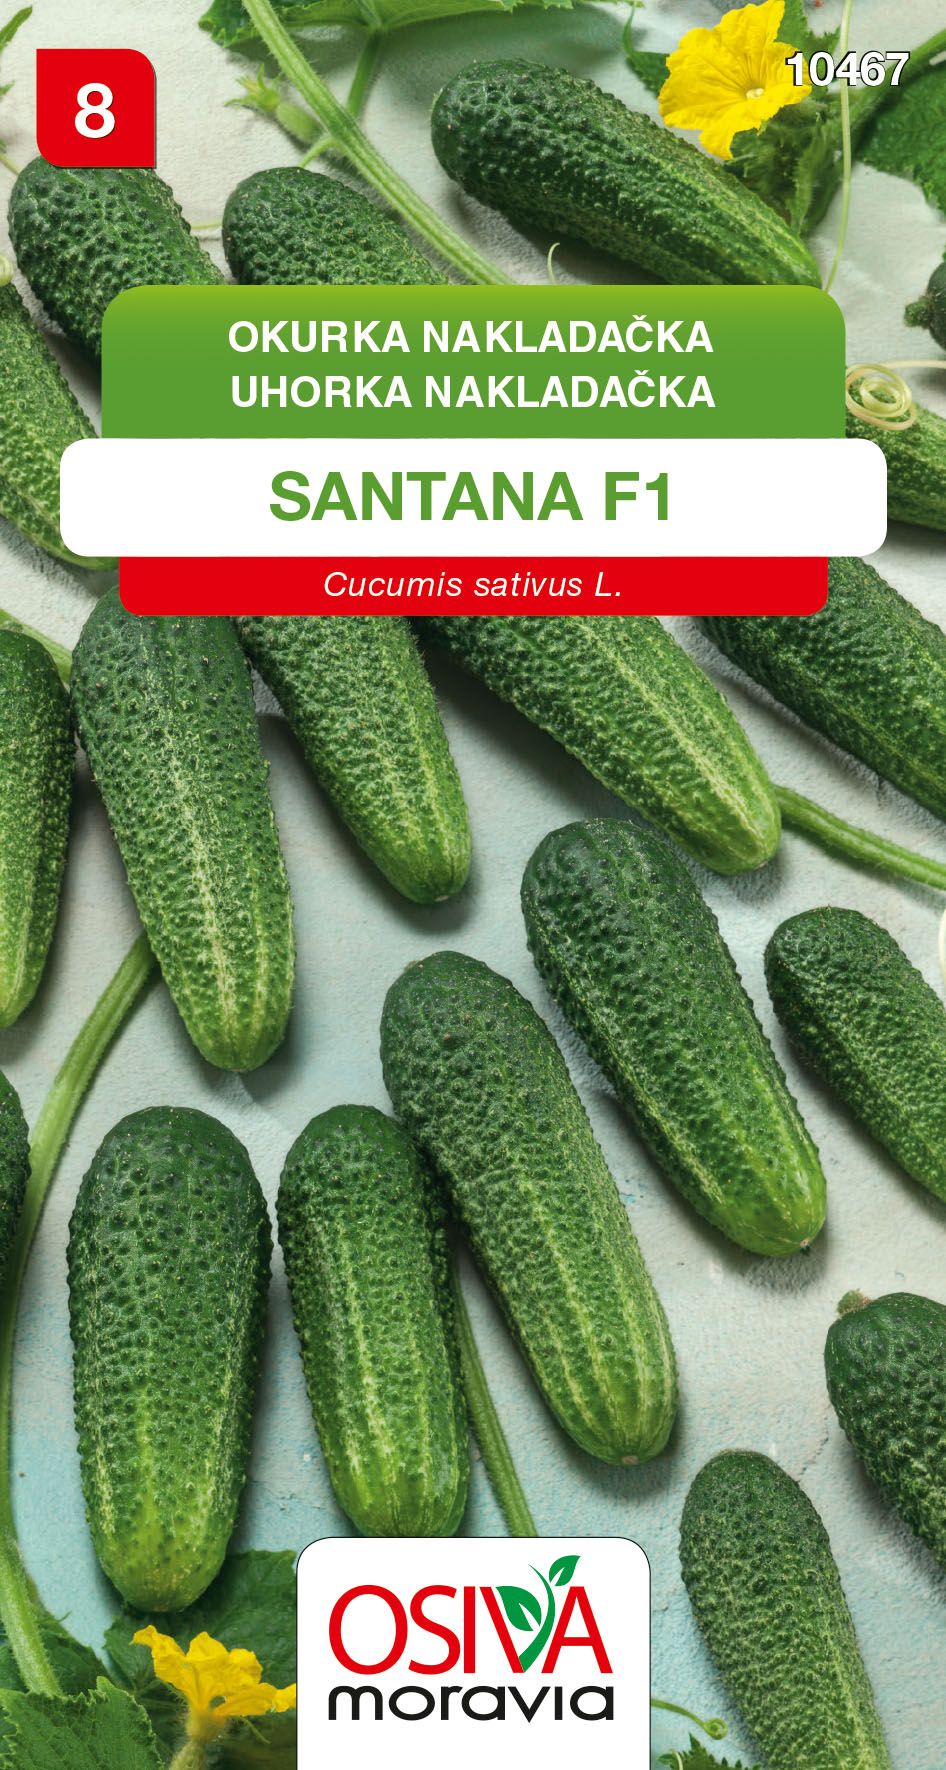 Okurka nakladačka - Santana F1